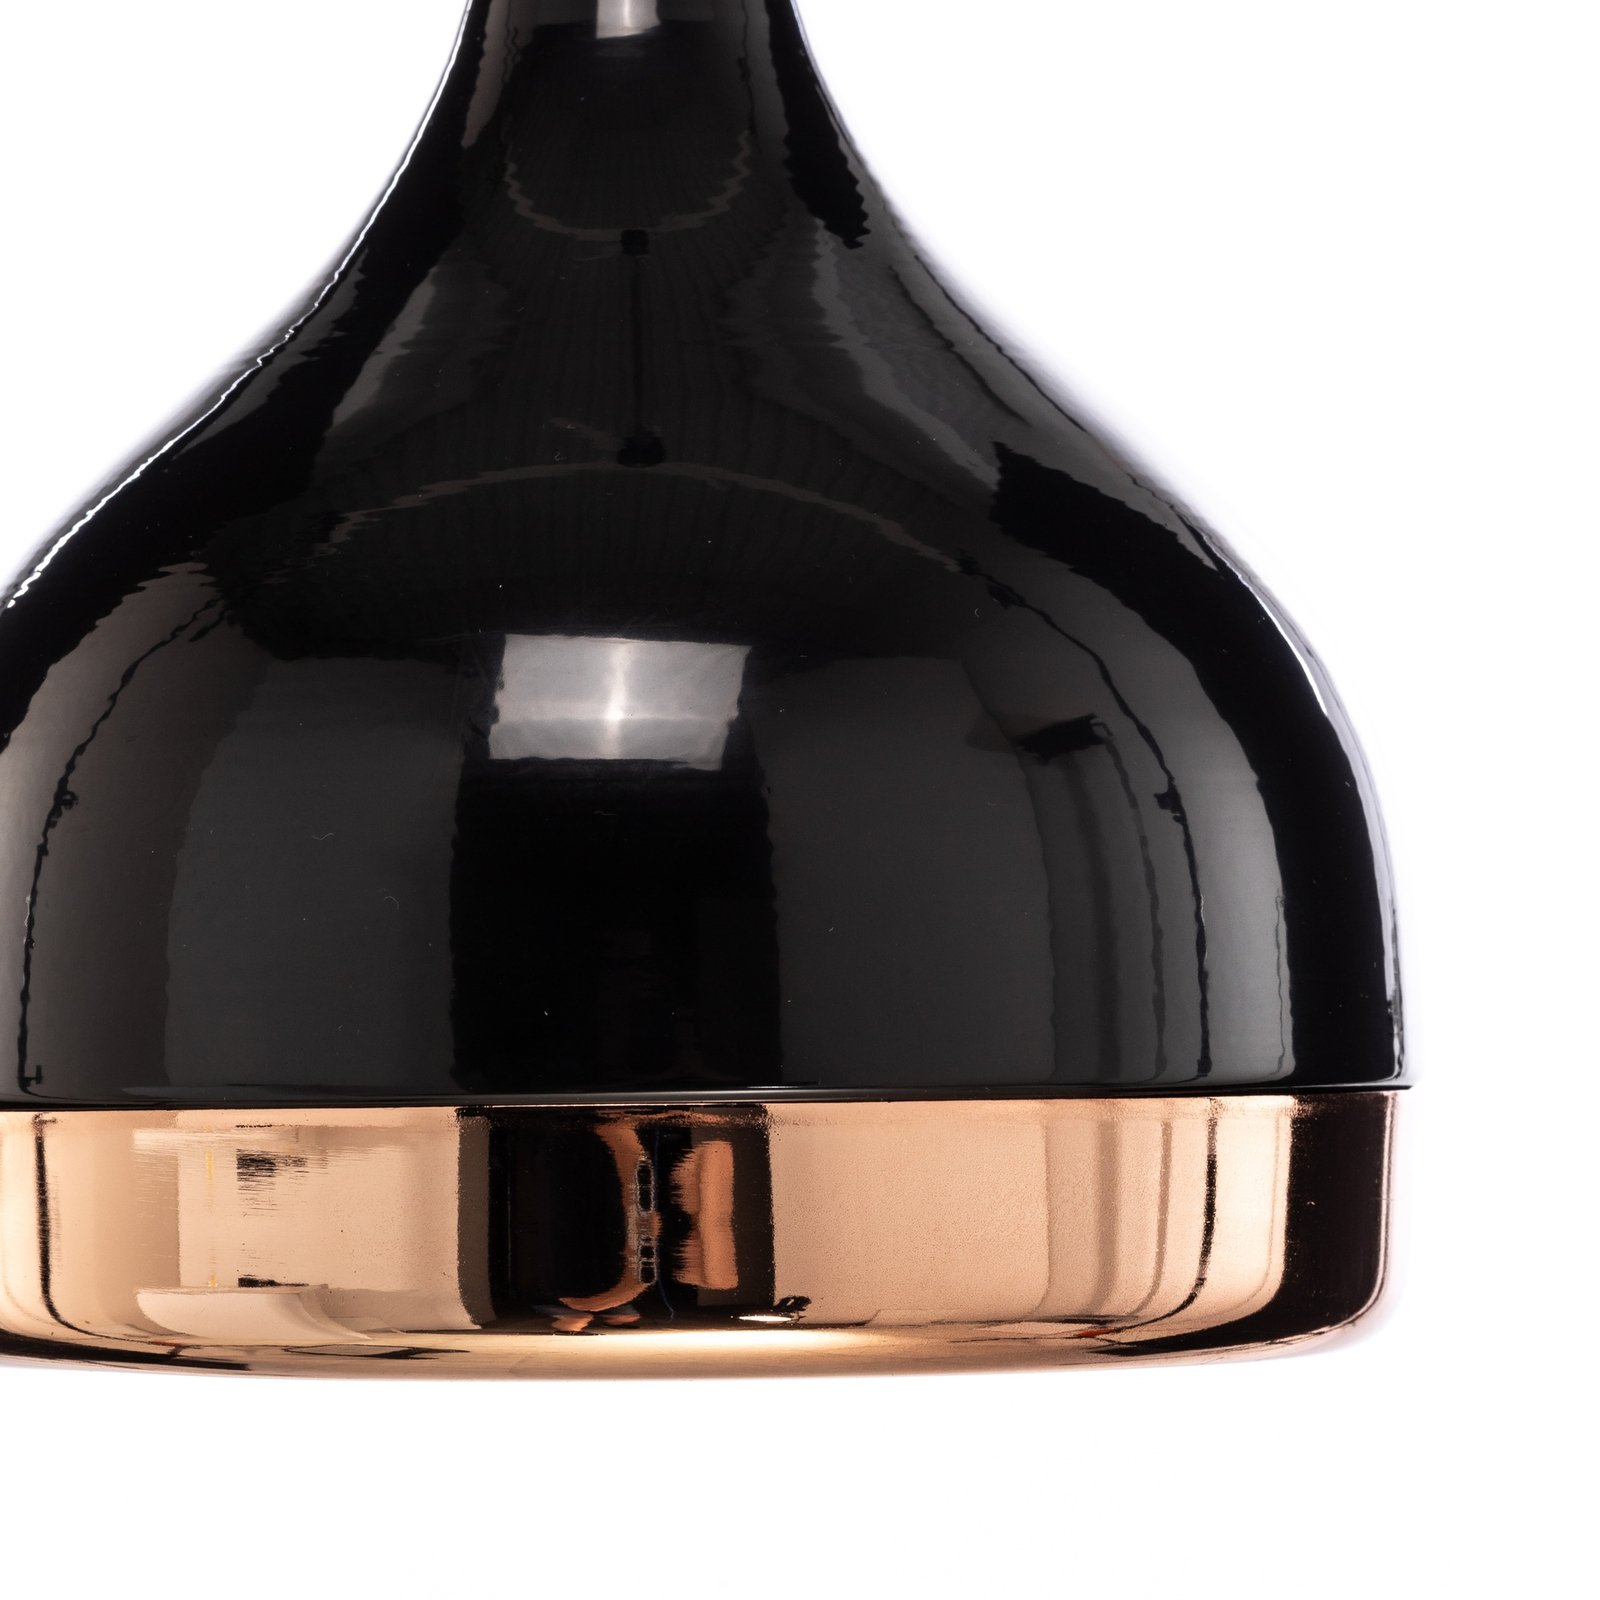 Hanglamp Yildo 6866 1-lamp Ø17cm zwart/koper